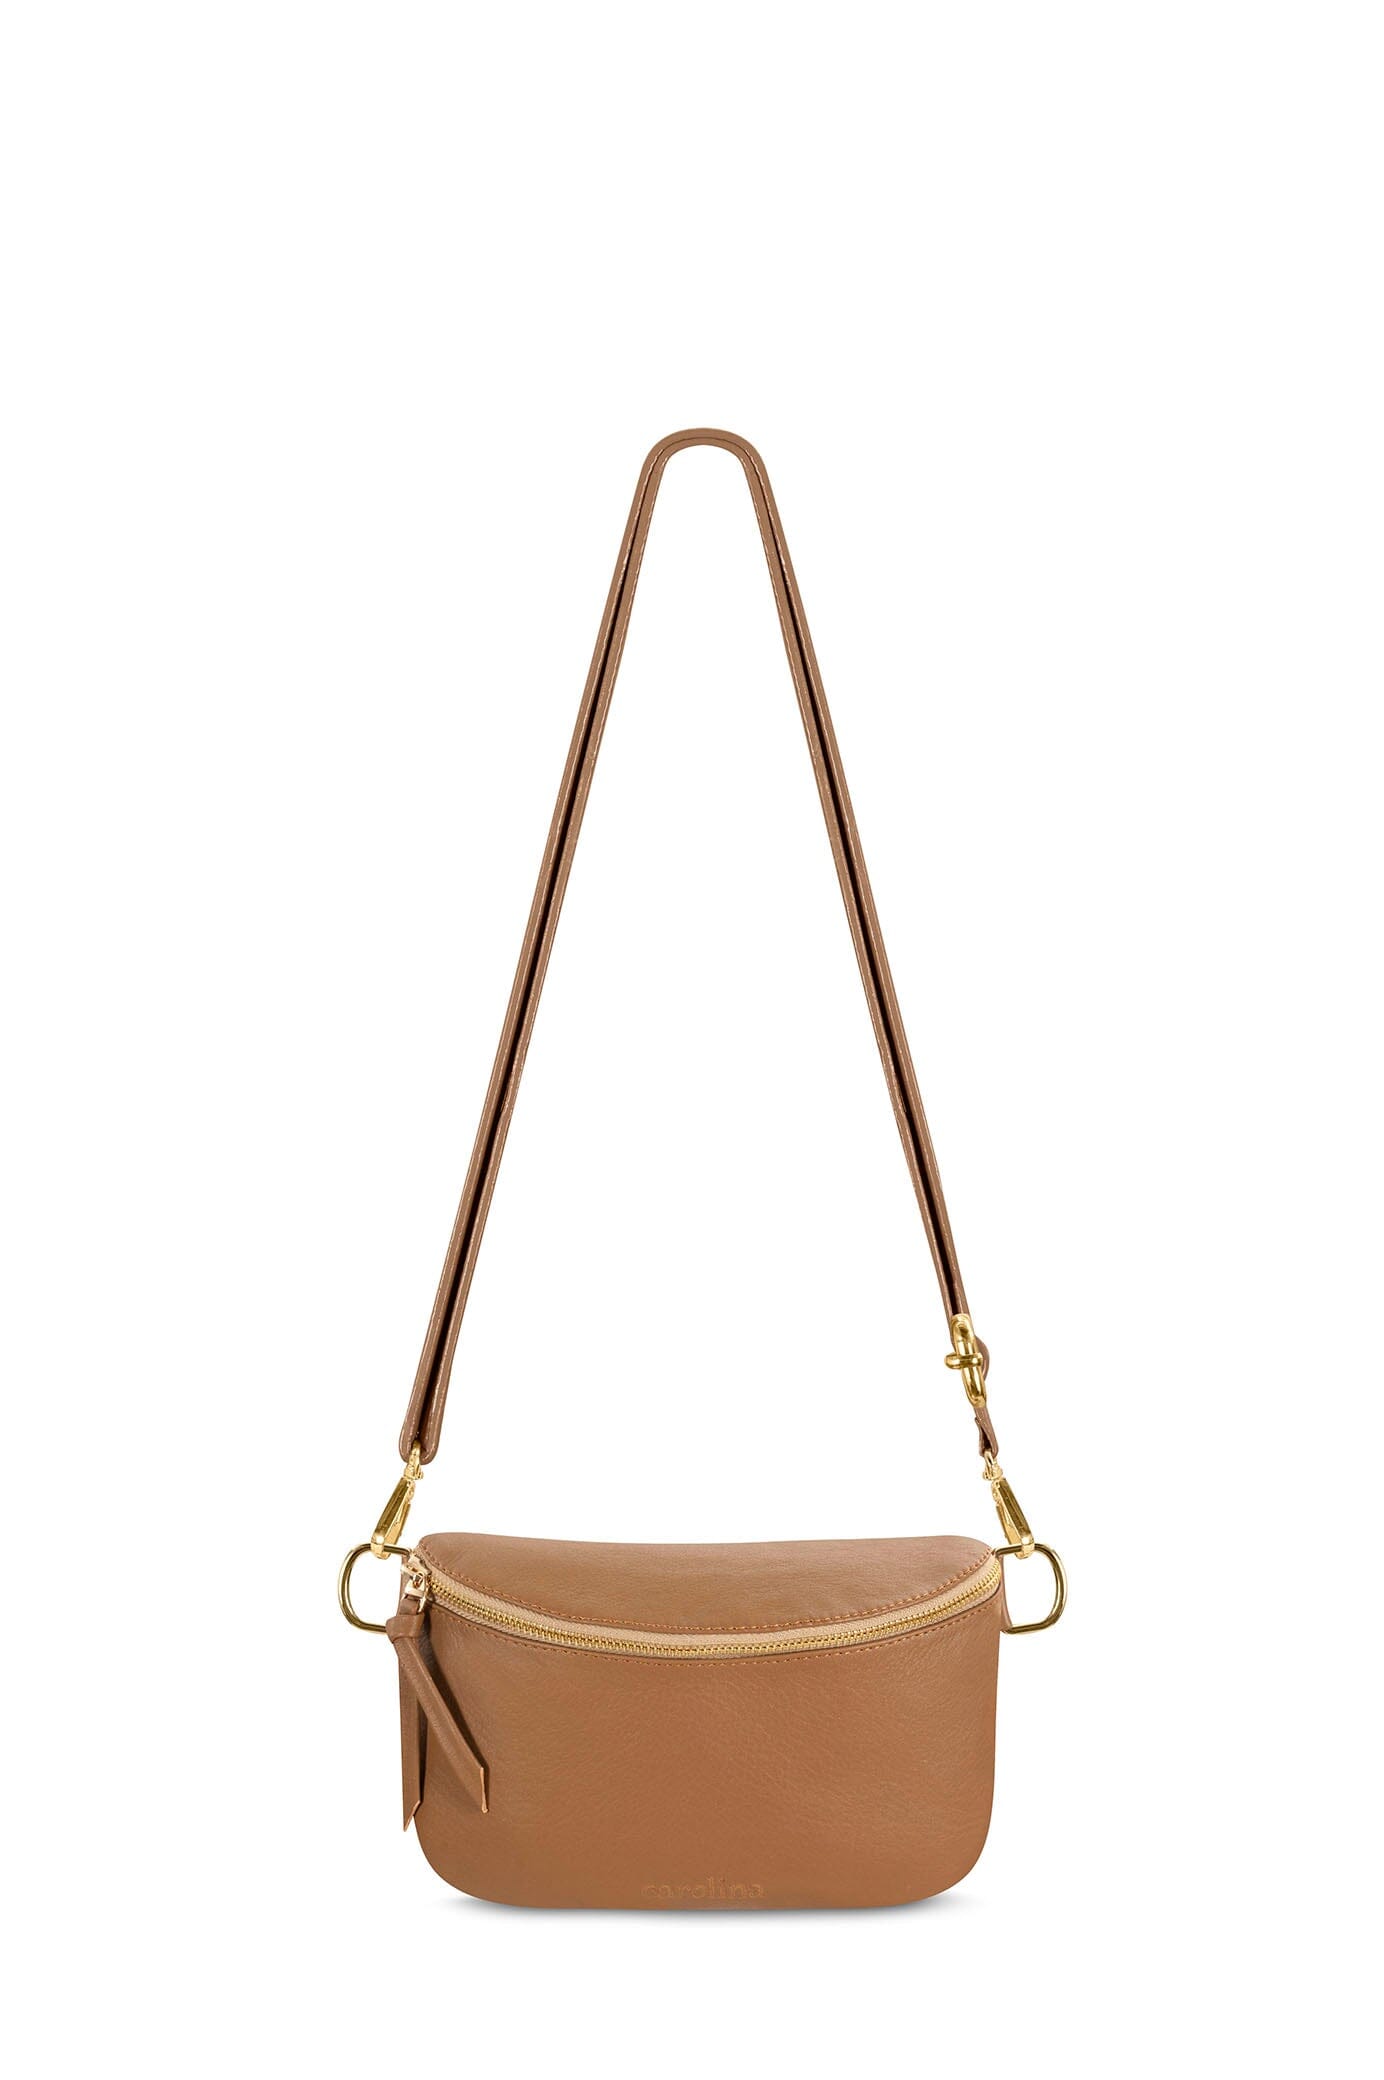 Ramona Small Leather Handbag Tan Crossbody Bag